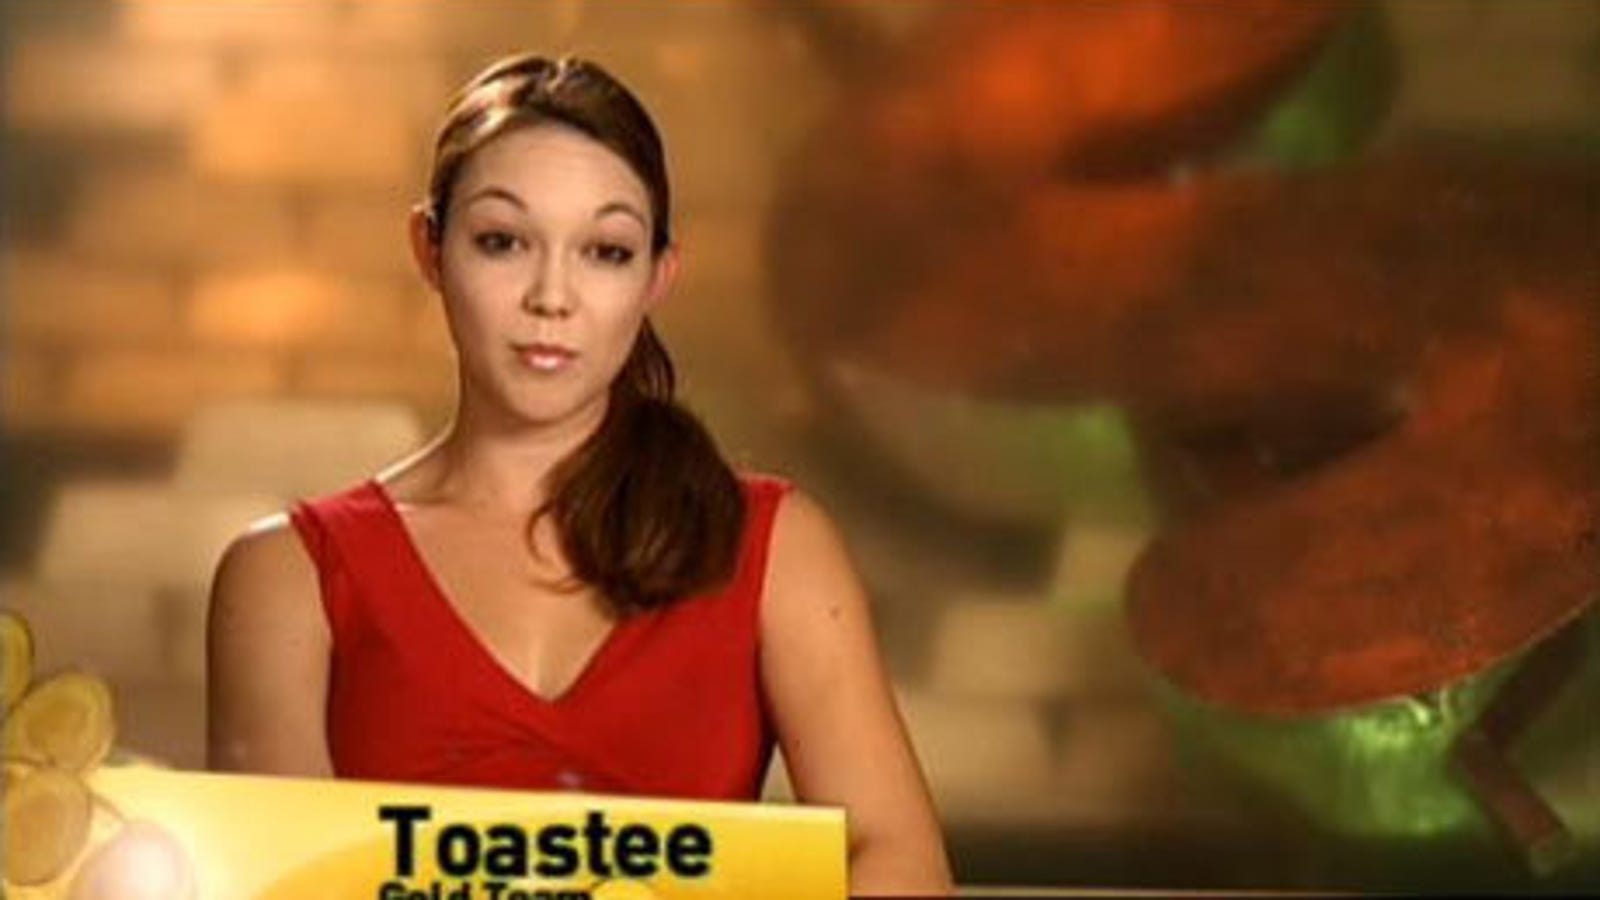 jennifer aka toastee flavor of love nude pictures - Jennifer Toof aka Toast...